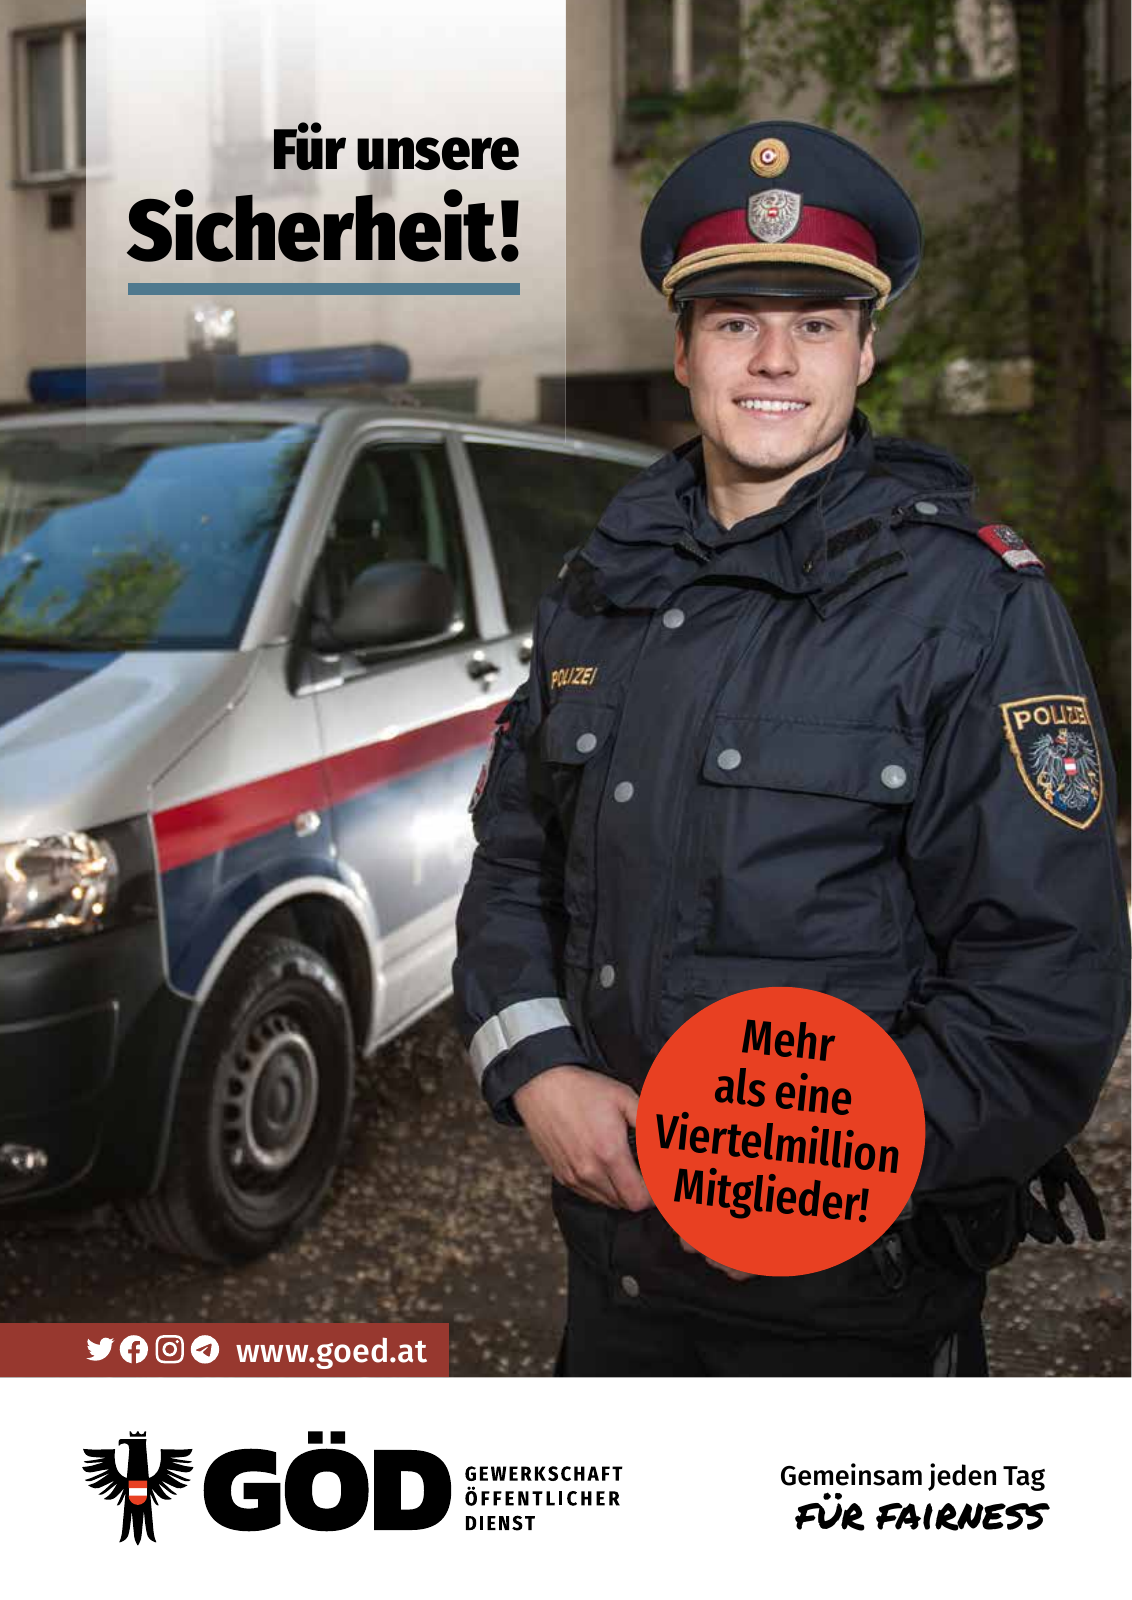 Vorschau Rundschau Polizei Sport 11-12/2020 Seite 48